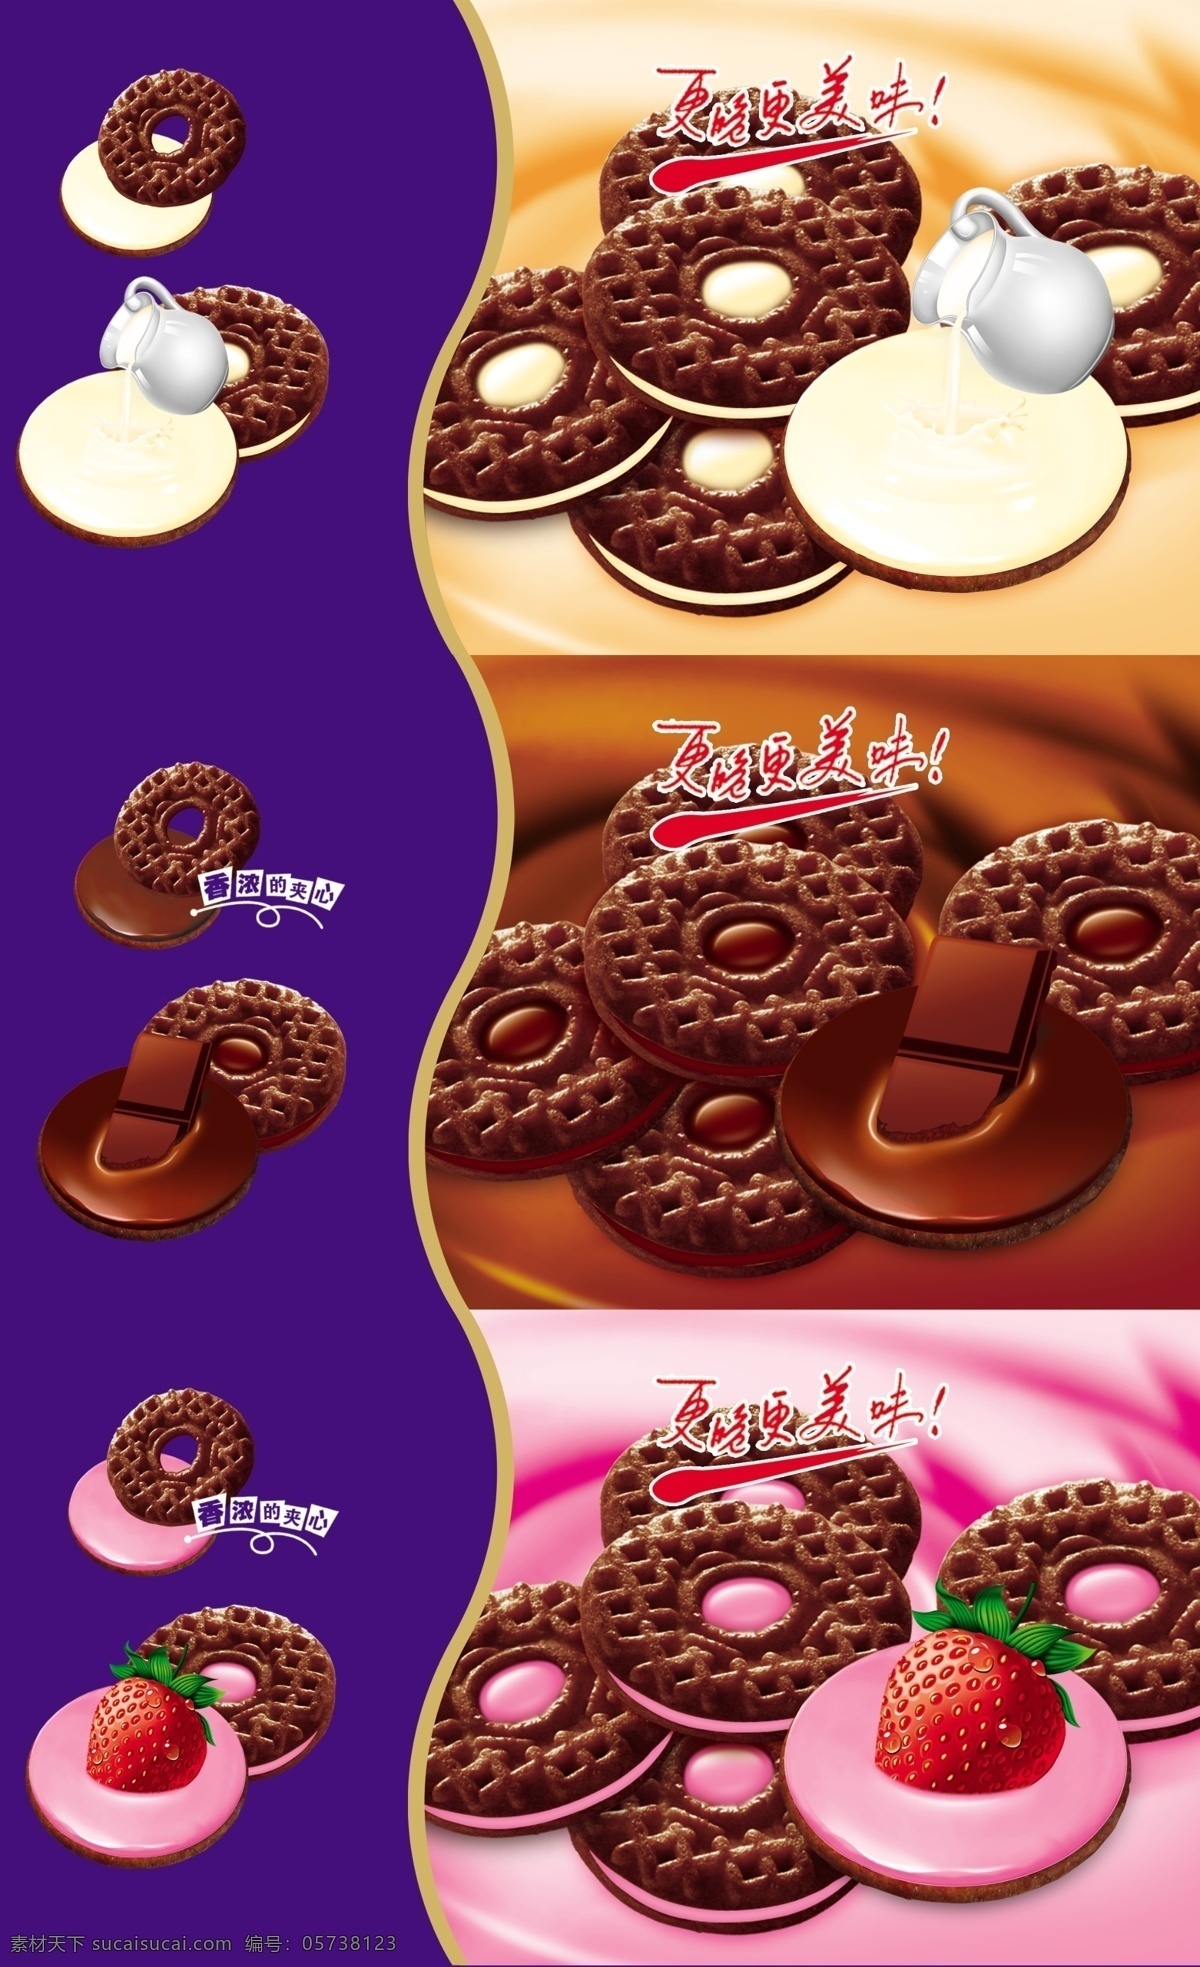 真巧夹心饼干 真巧 夹心饼干 巧克力 牛奶 草莓味 超值装 美味 三连装 包装设计 广告设计模板 源文件